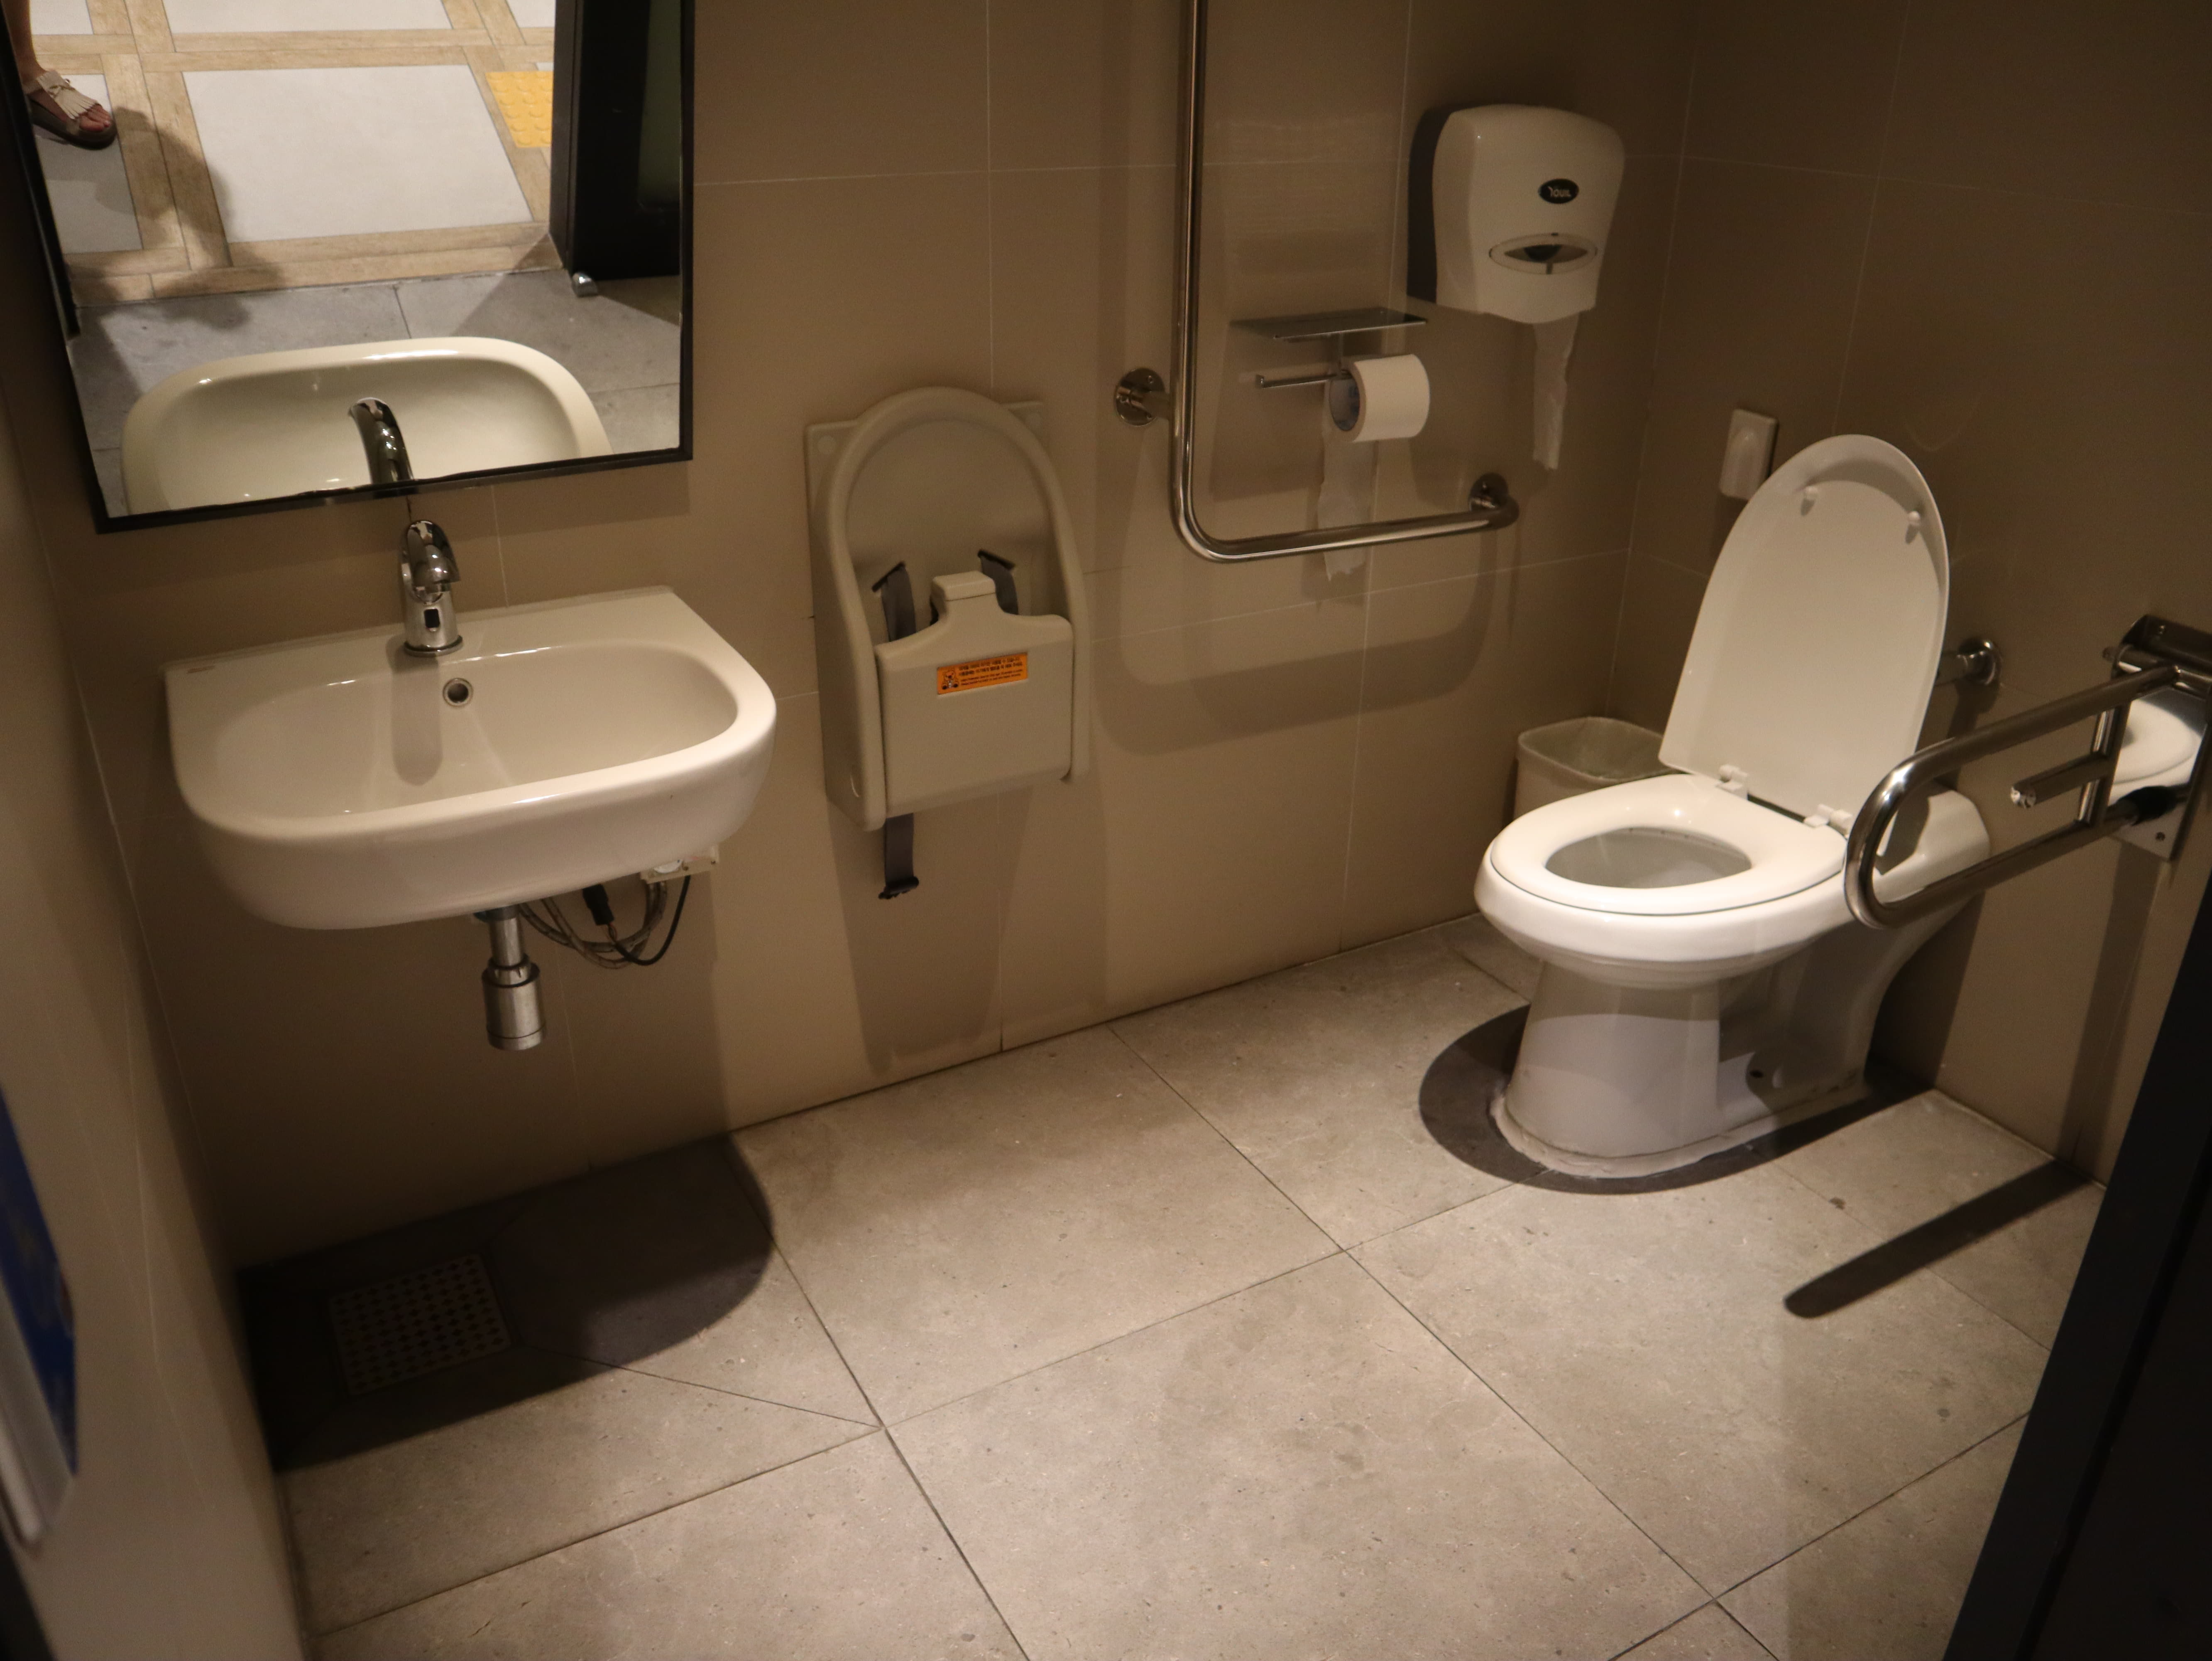 장애인 화장실0 : 넓은 공간의 서울로7017 장애인화장실 내부 전경